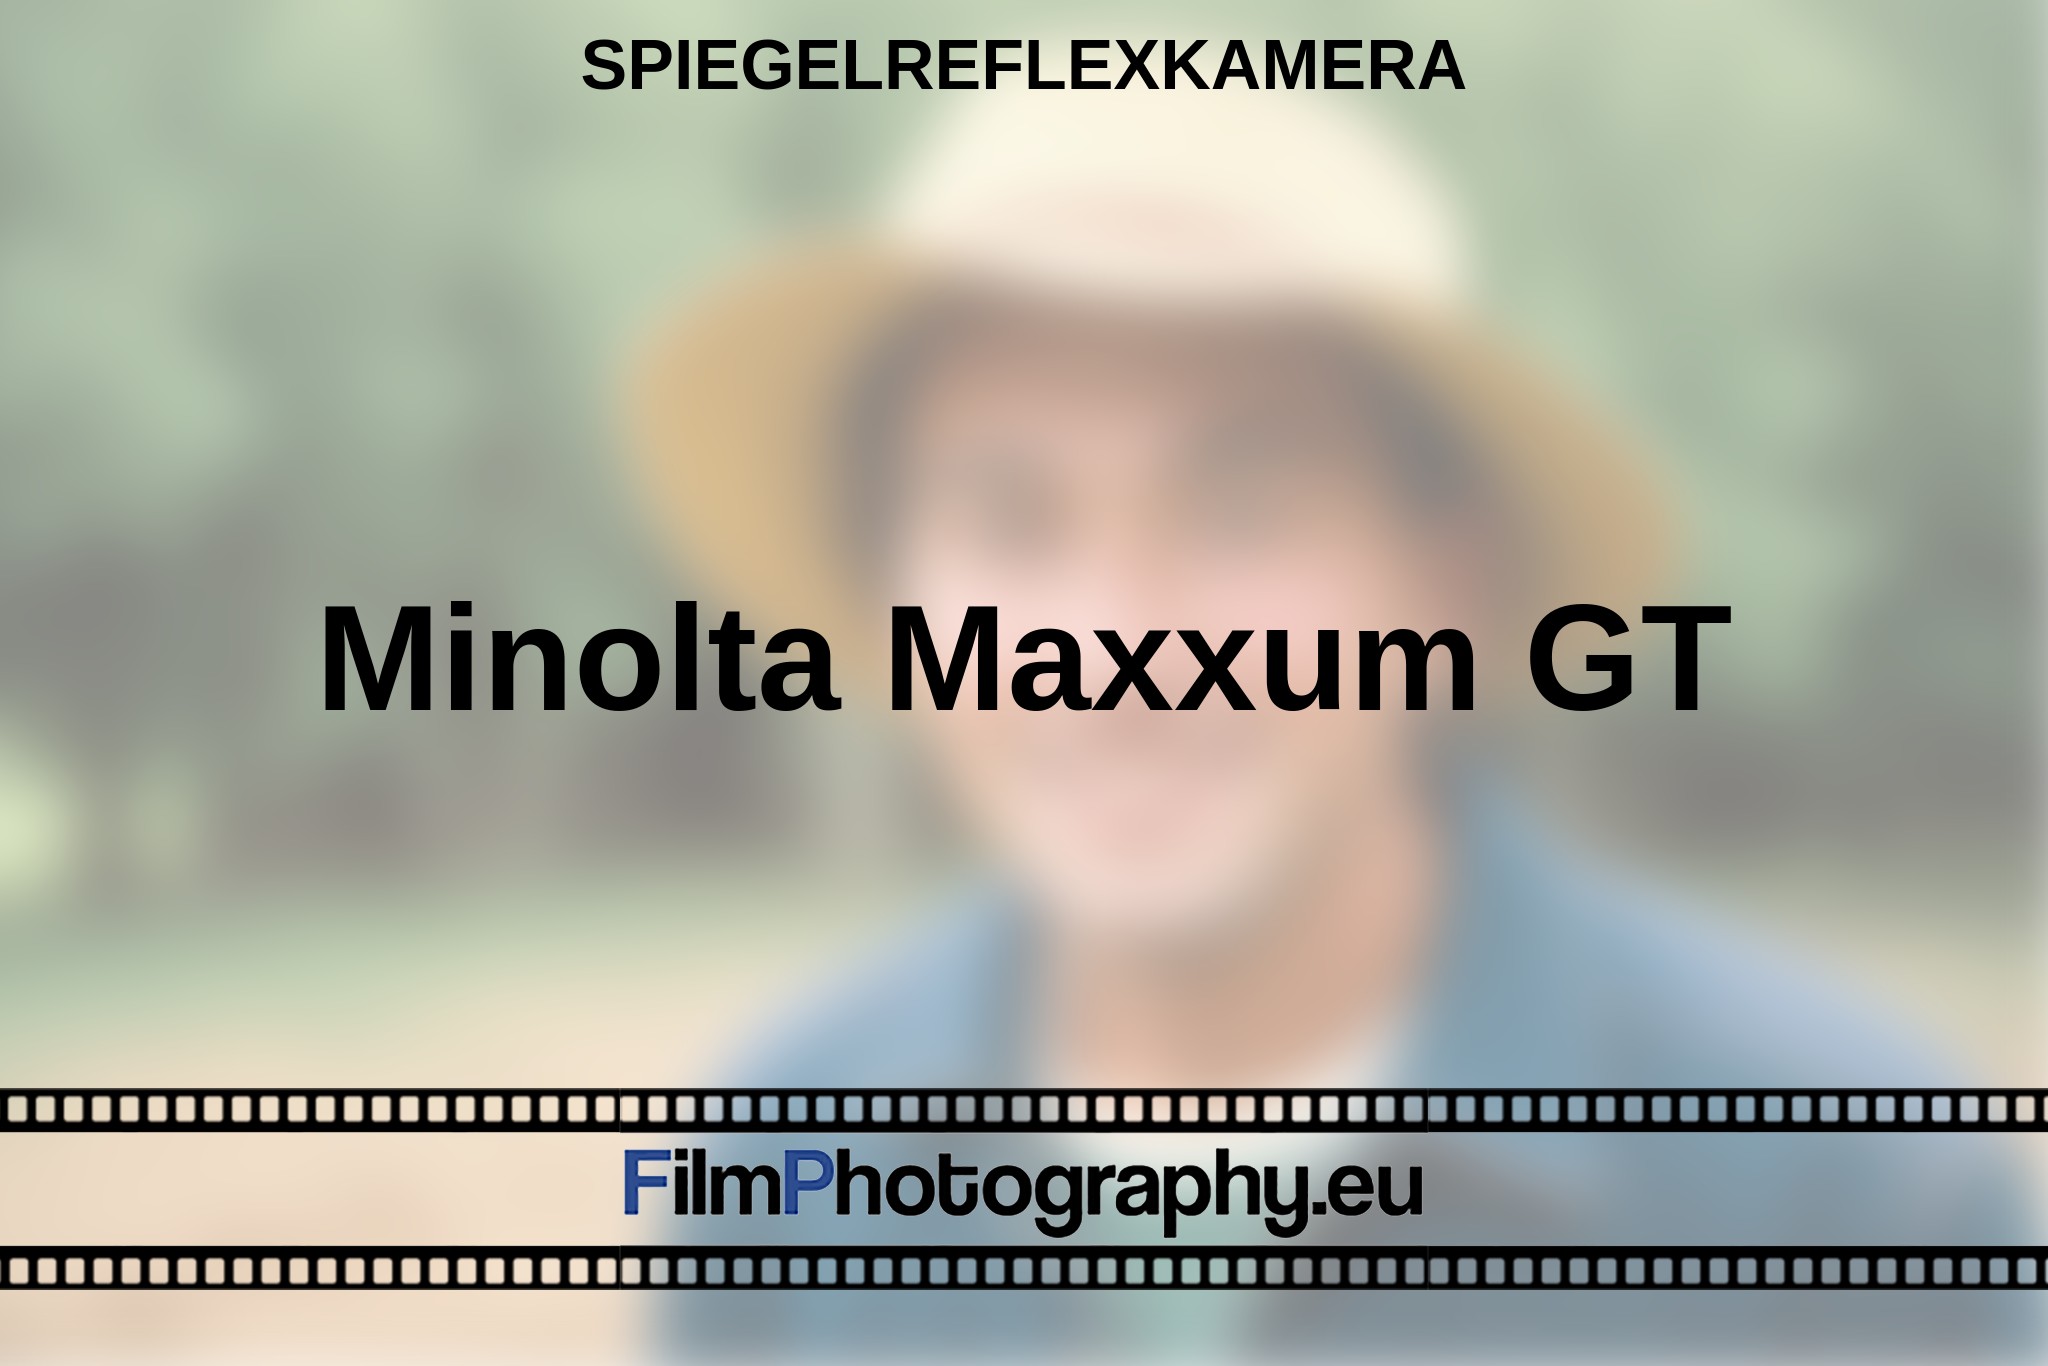 minolta-maxxum-gt-spiegelreflexkamera-bnv.jpg